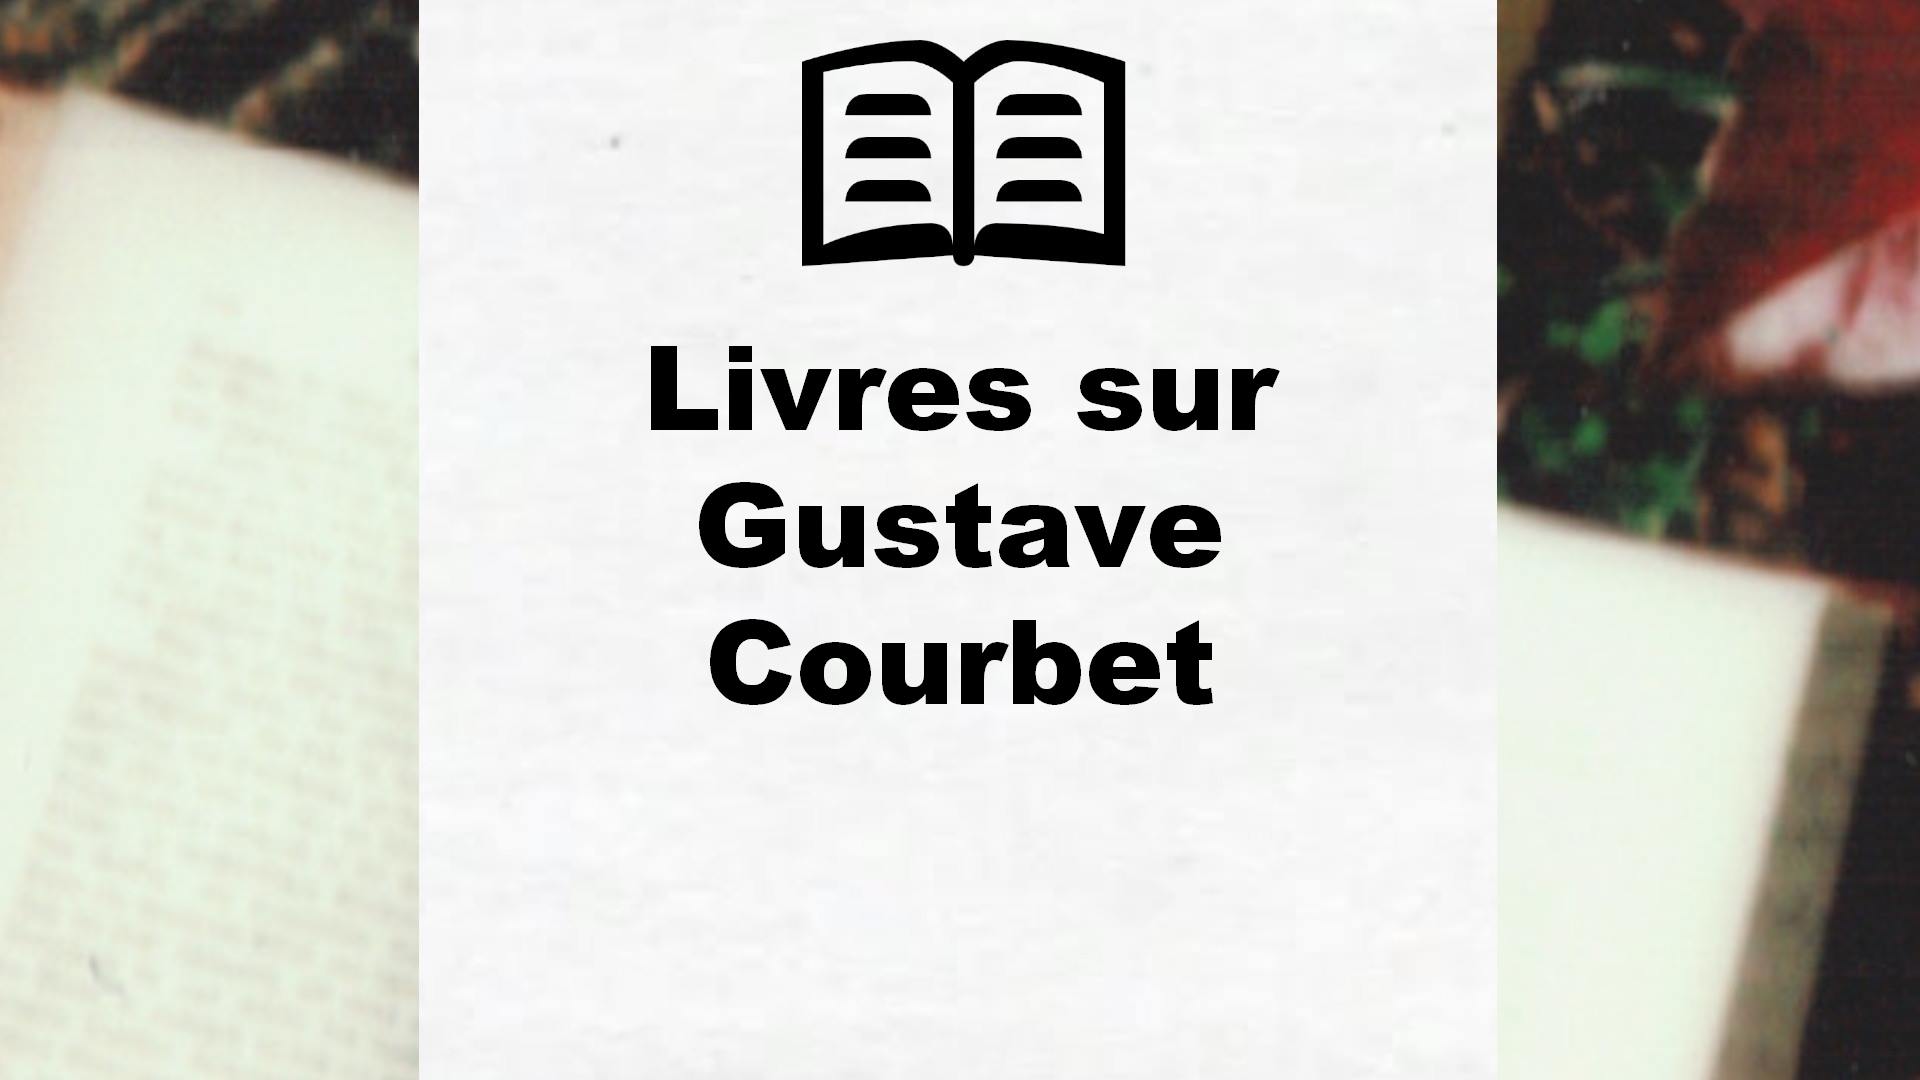 Livres sur Gustave Courbet